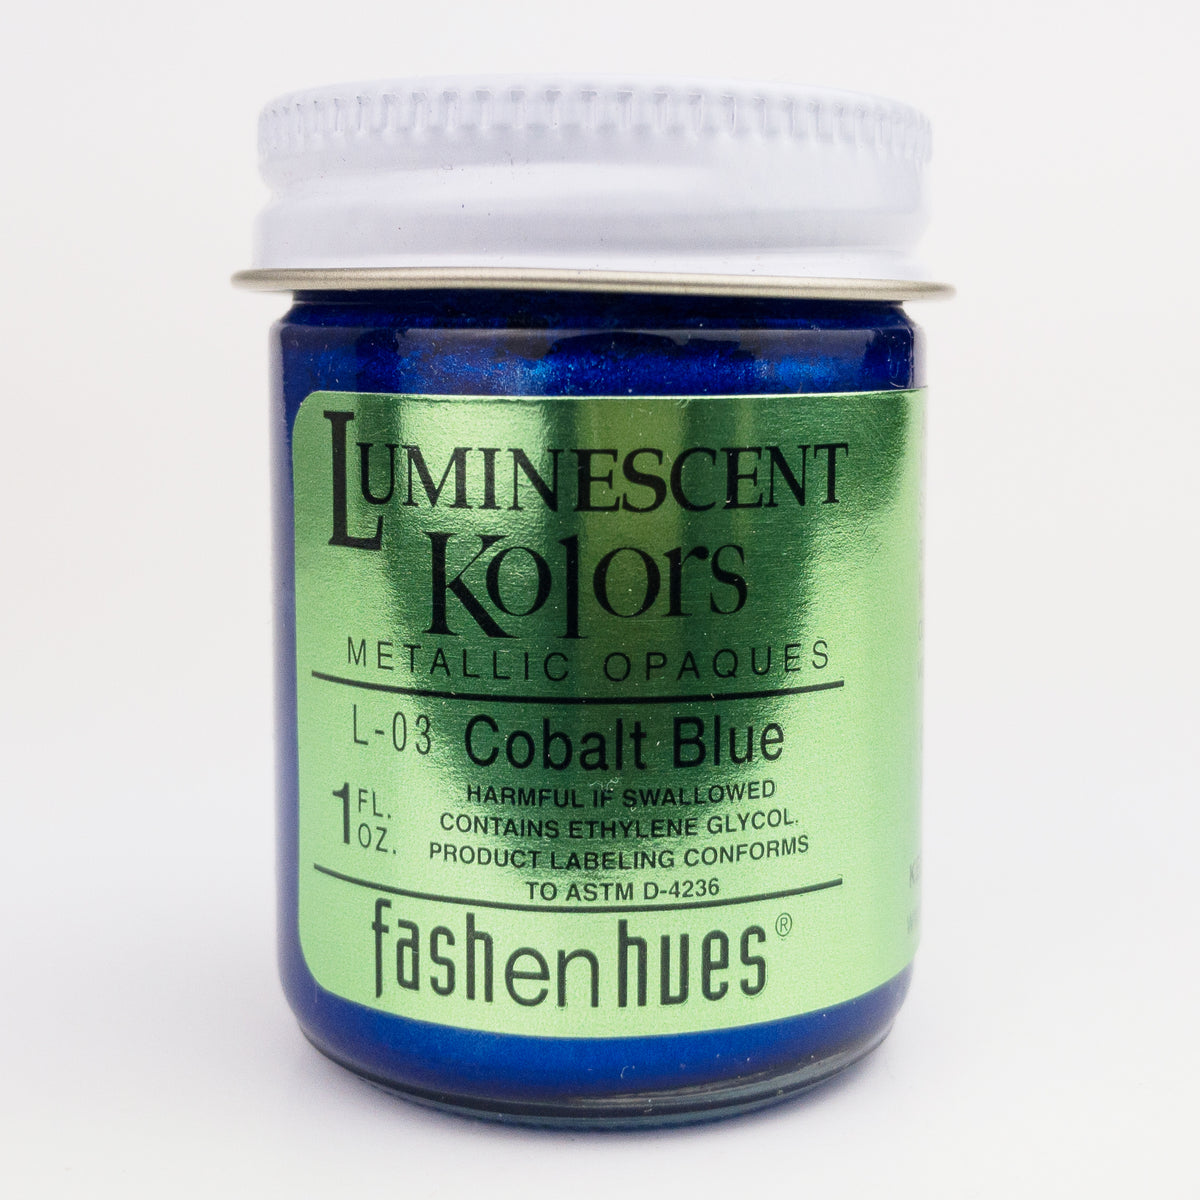 Luminescent_Kolors_L-03_Cobalt_Blue_1